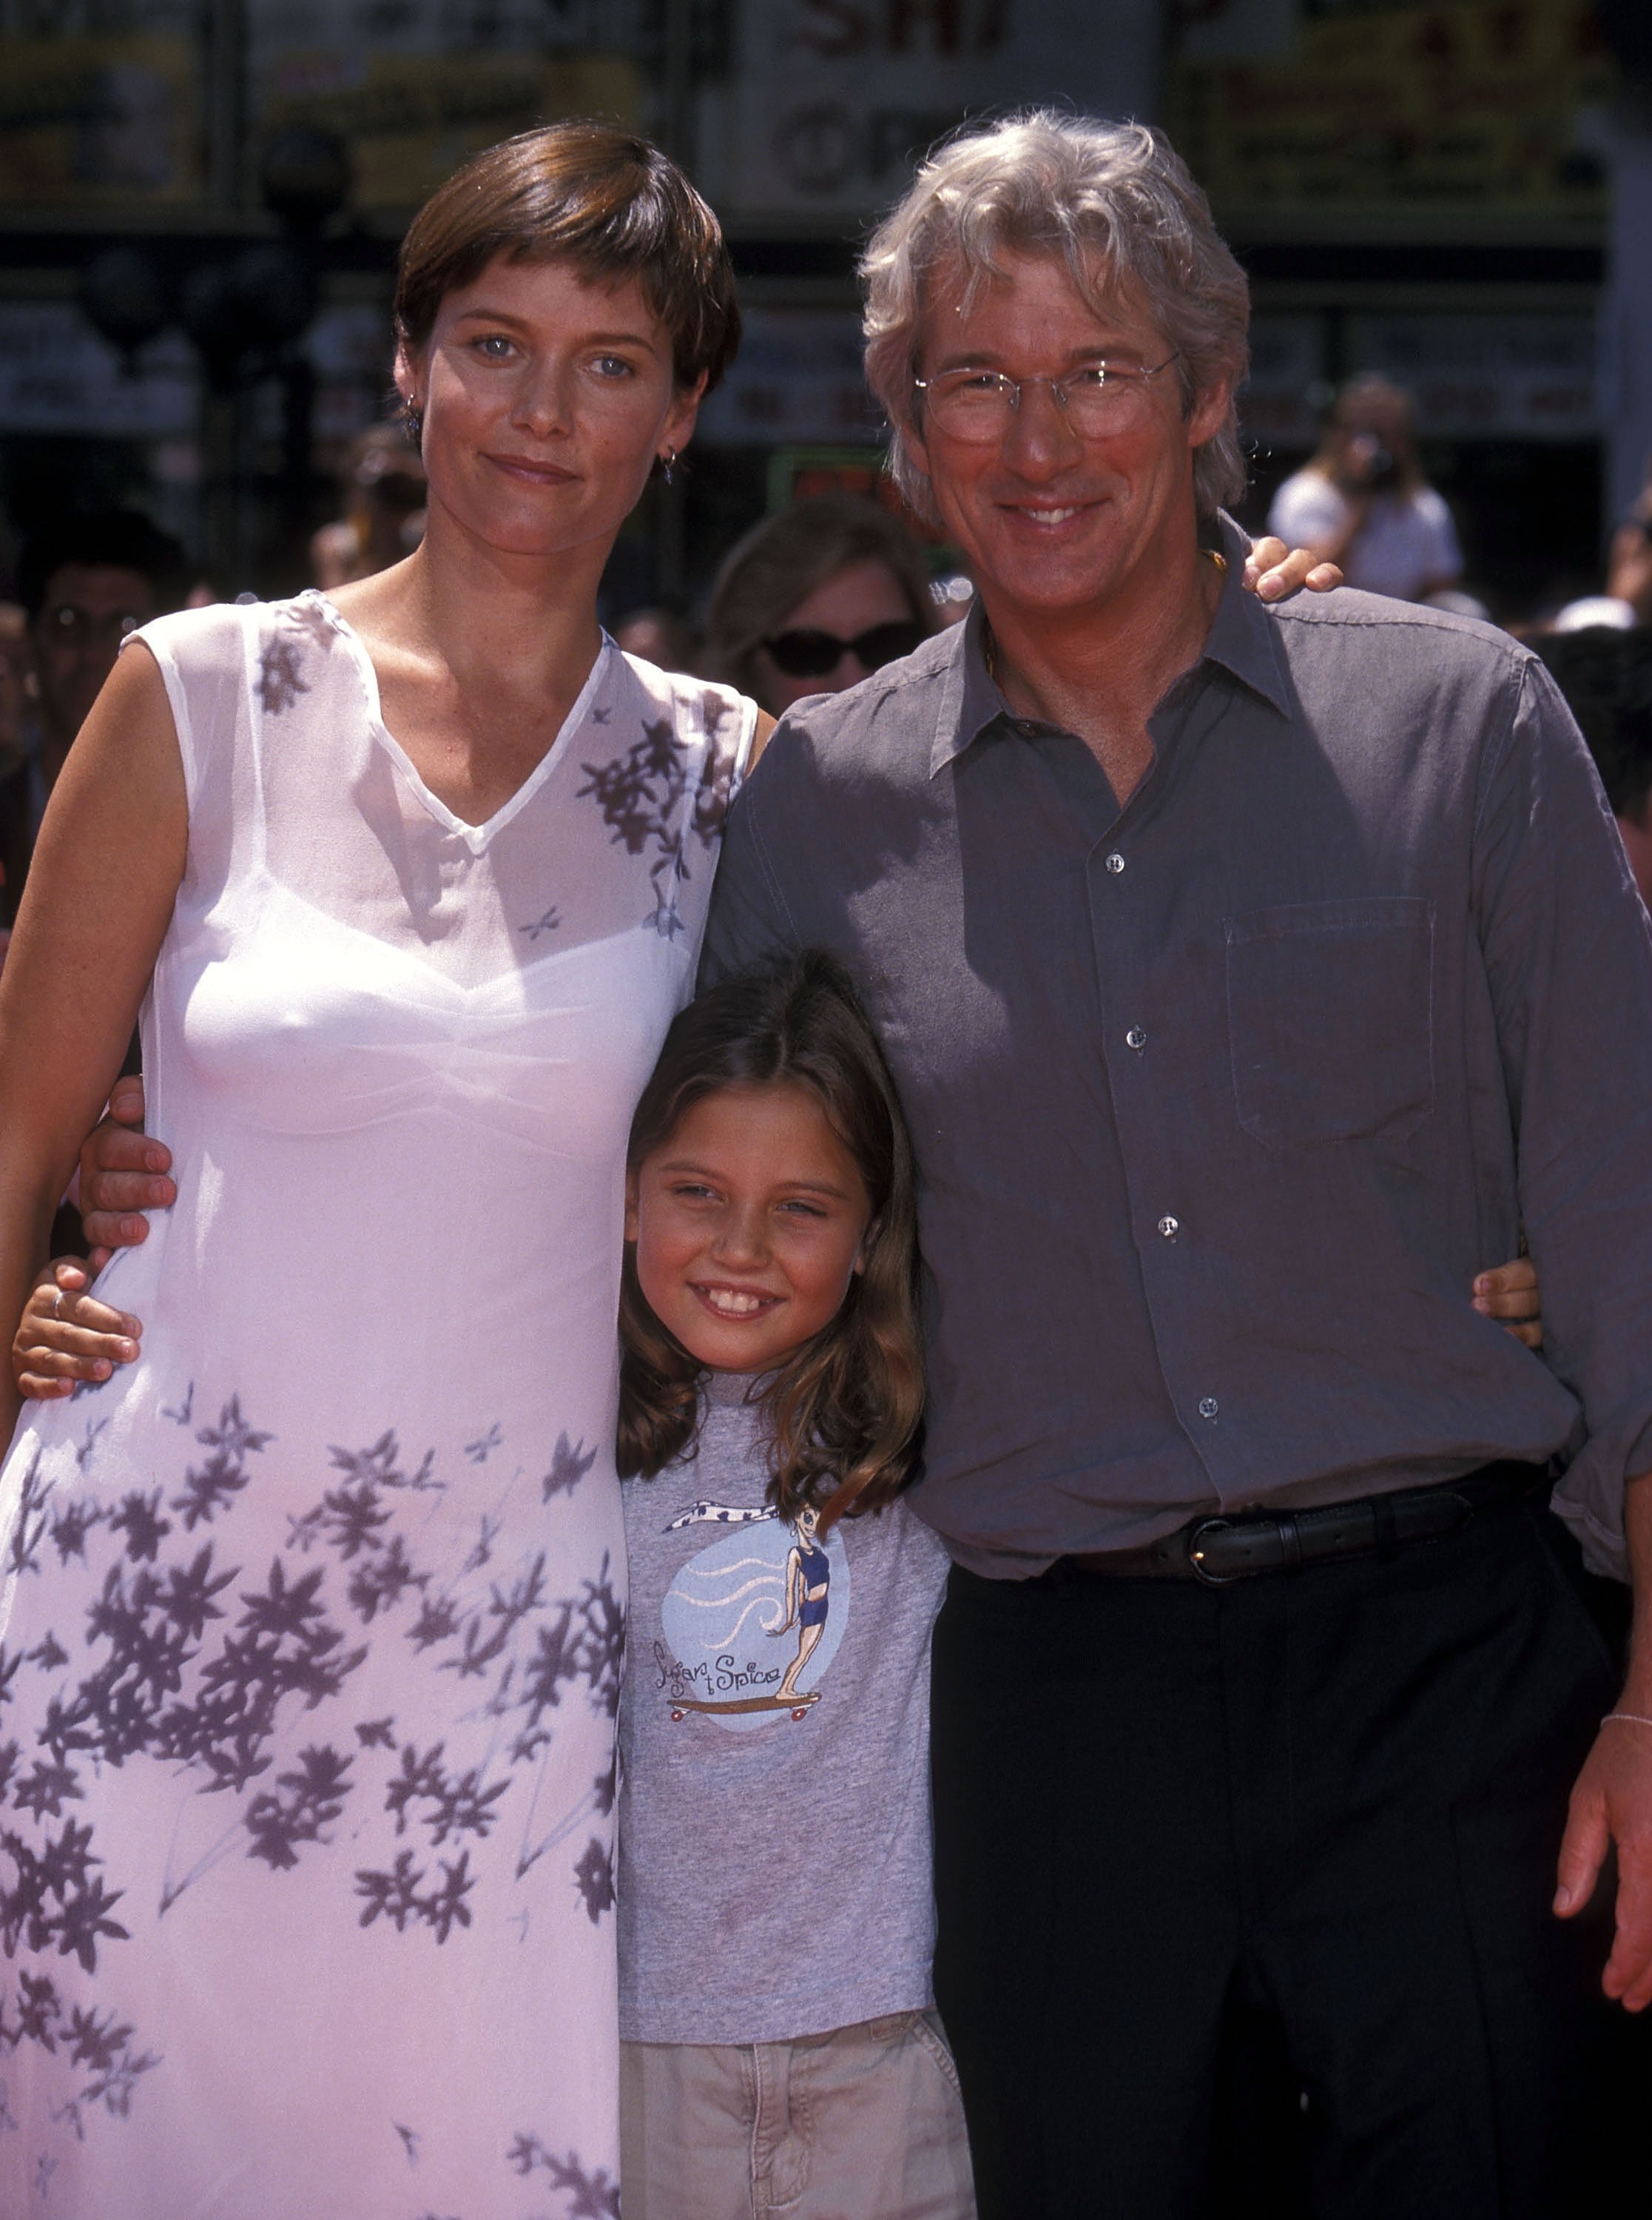 La actriz Carey Lowell, su hija Hannah Dunne y el actor Richard Gere en la ceremonia de las manos y huellas en cemento de Richard Gere en el Mann's Chinese Theatre, el 26 de julio de 1999 en Hollywood, California. ┃ Foto: Getty Images